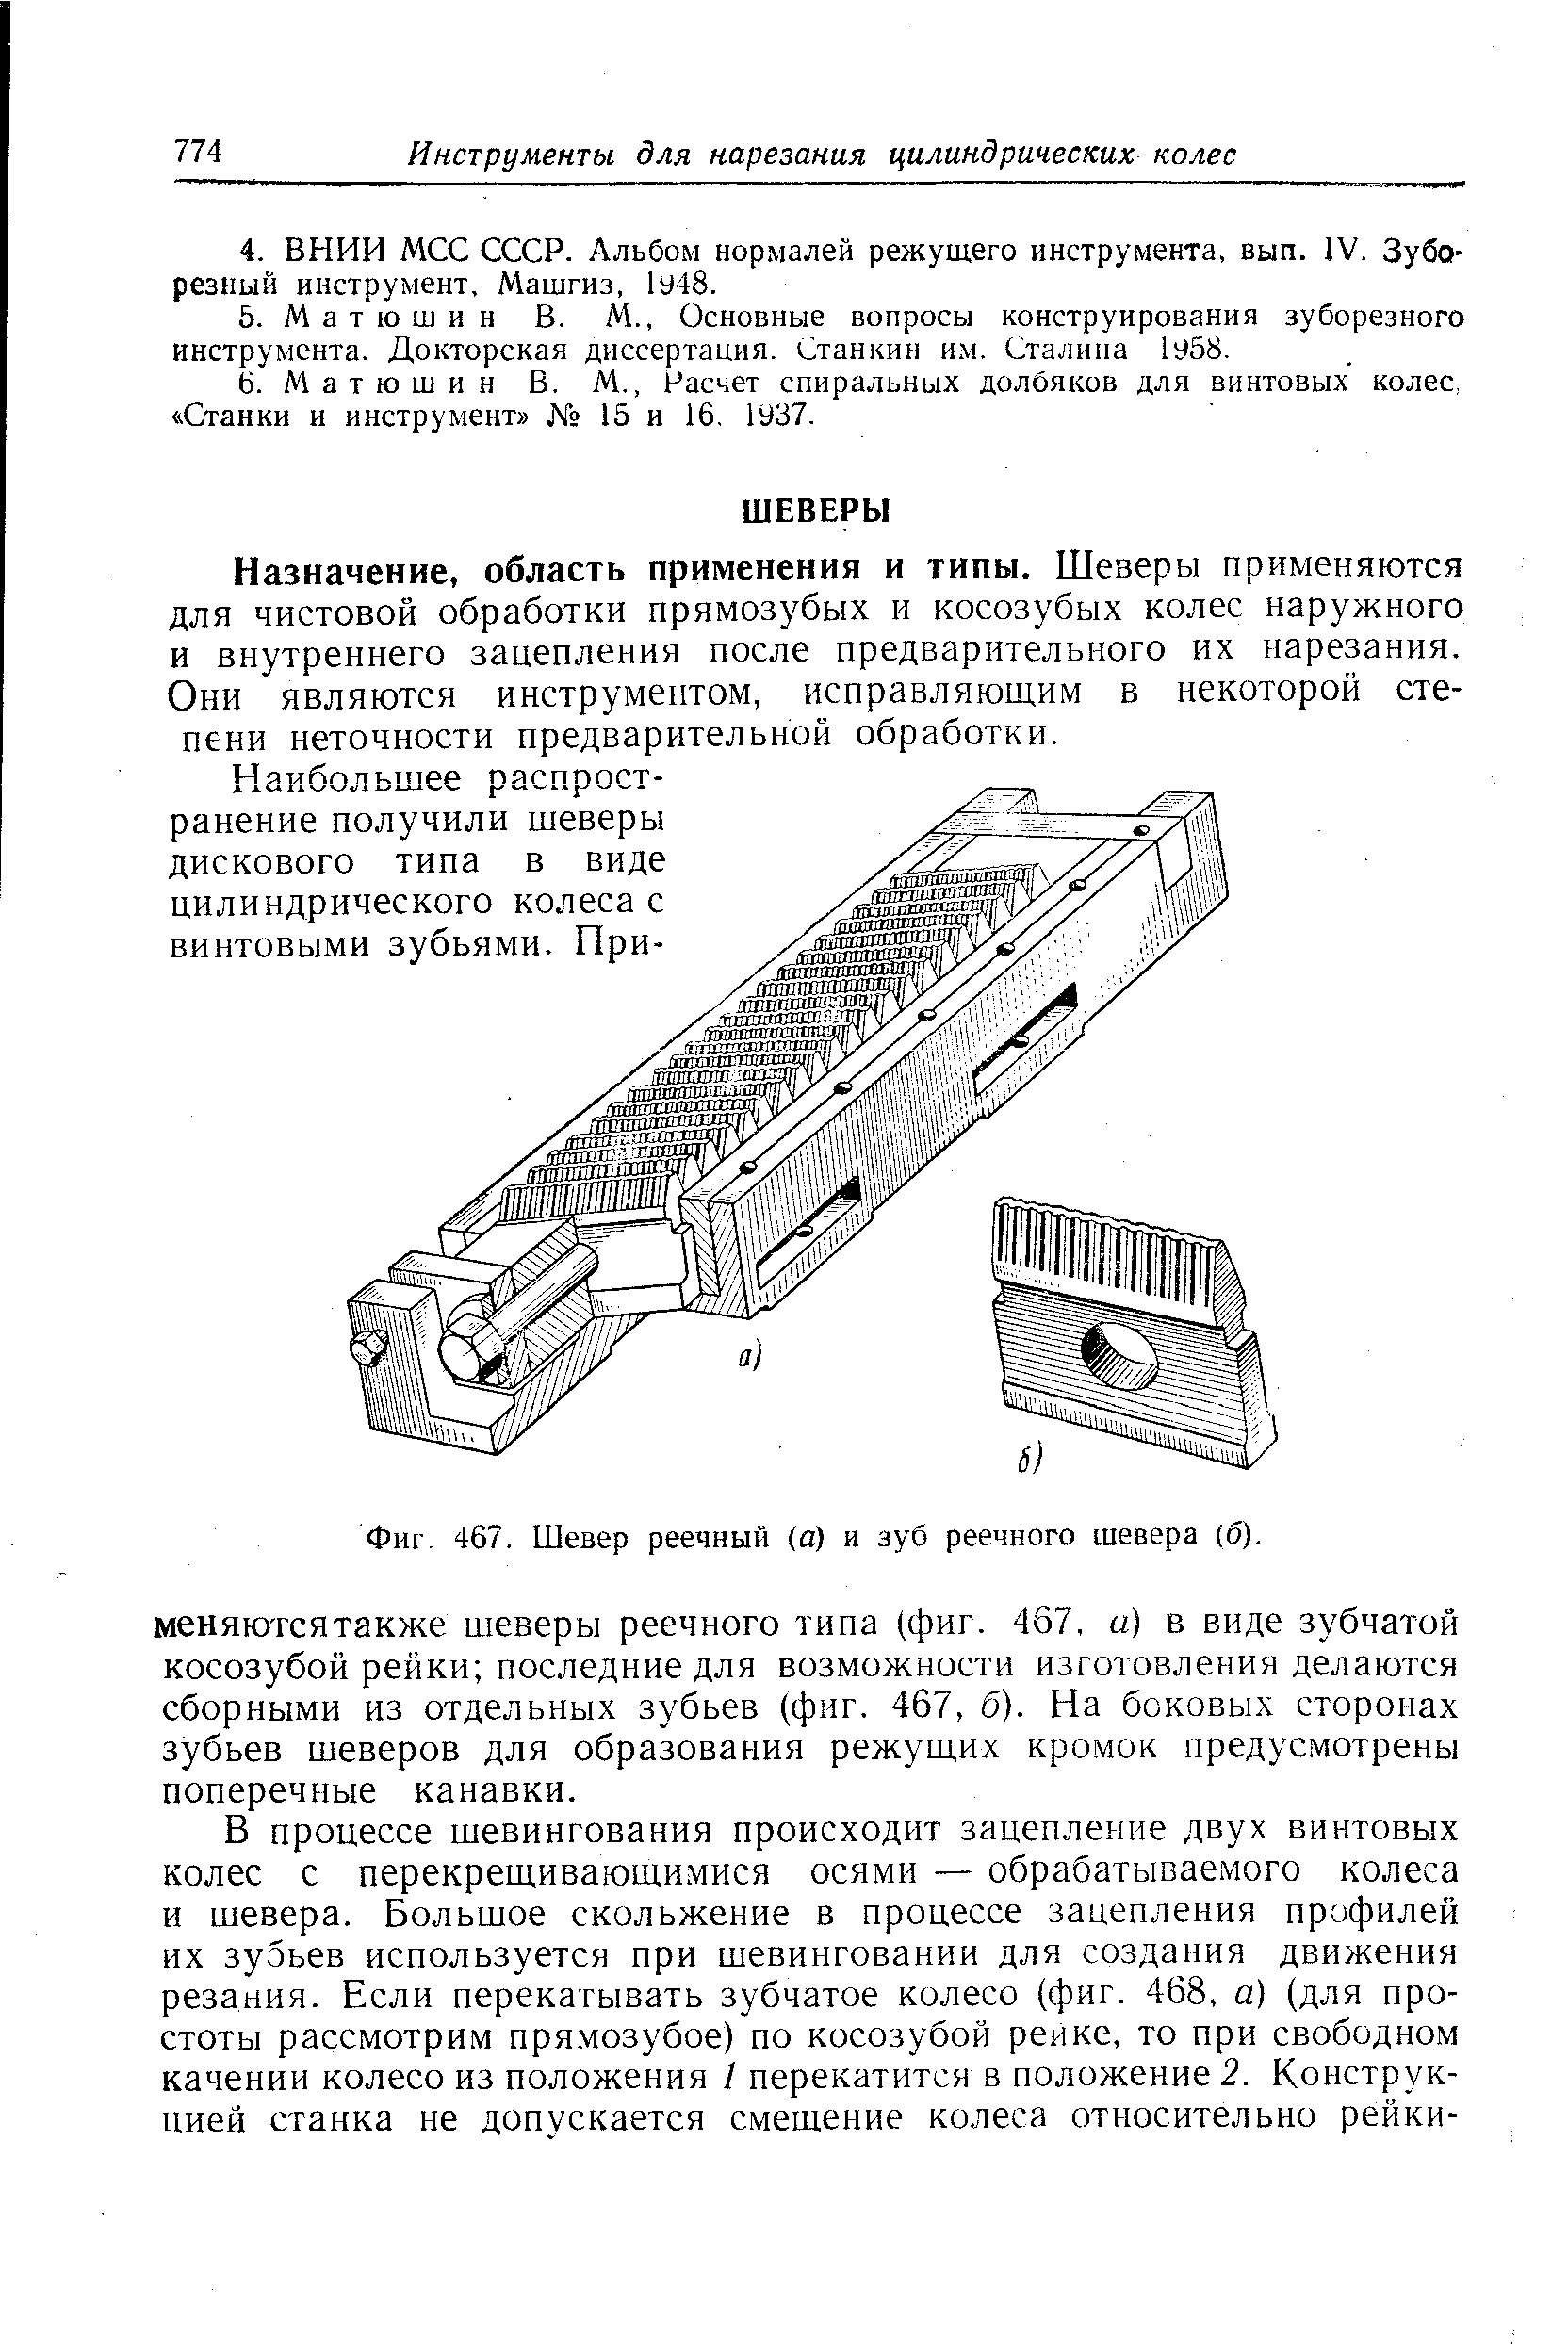 Фиг. 467, Шевер реечный (а) и зуб реечного шевера (б).
